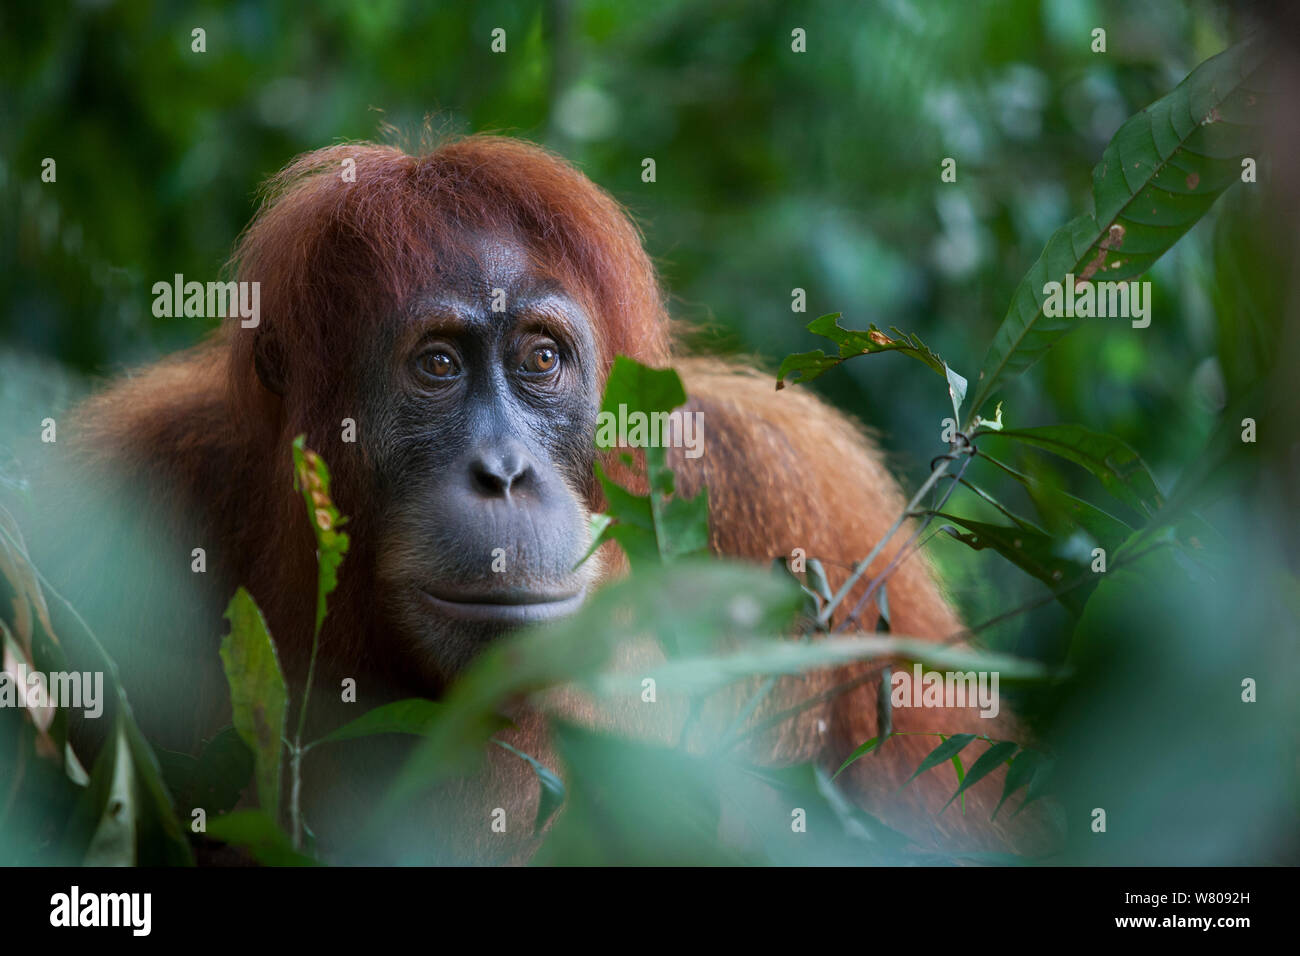 Sumatran orangutan (Pongo abelii) female portrait,  Gunung Leuser National Park, Sumatra, Indonesia. Stock Photo